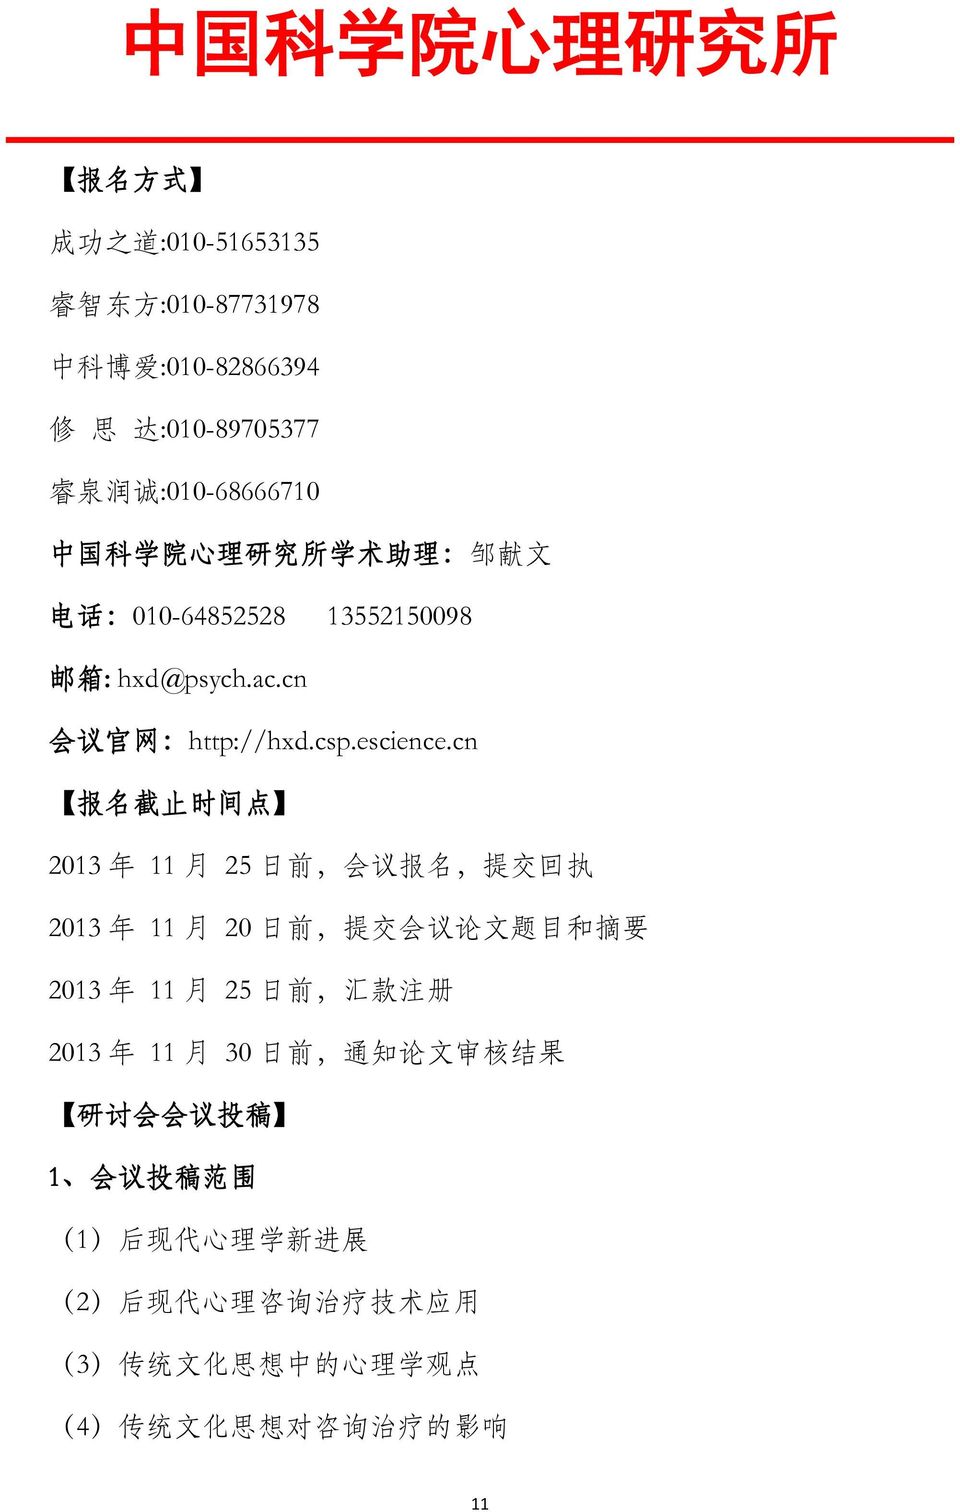 cn 报 名 截 止 时 间 点 2013 年 11 月 25 日 前, 会 议 报 名, 提 交 回 执 2013 年 11 月 20 日 前, 提 交 会 议 论 文 题 目 和 摘 要 2013 年 11 月 25 日 前, 汇 款 注 册 2013 年 11 月